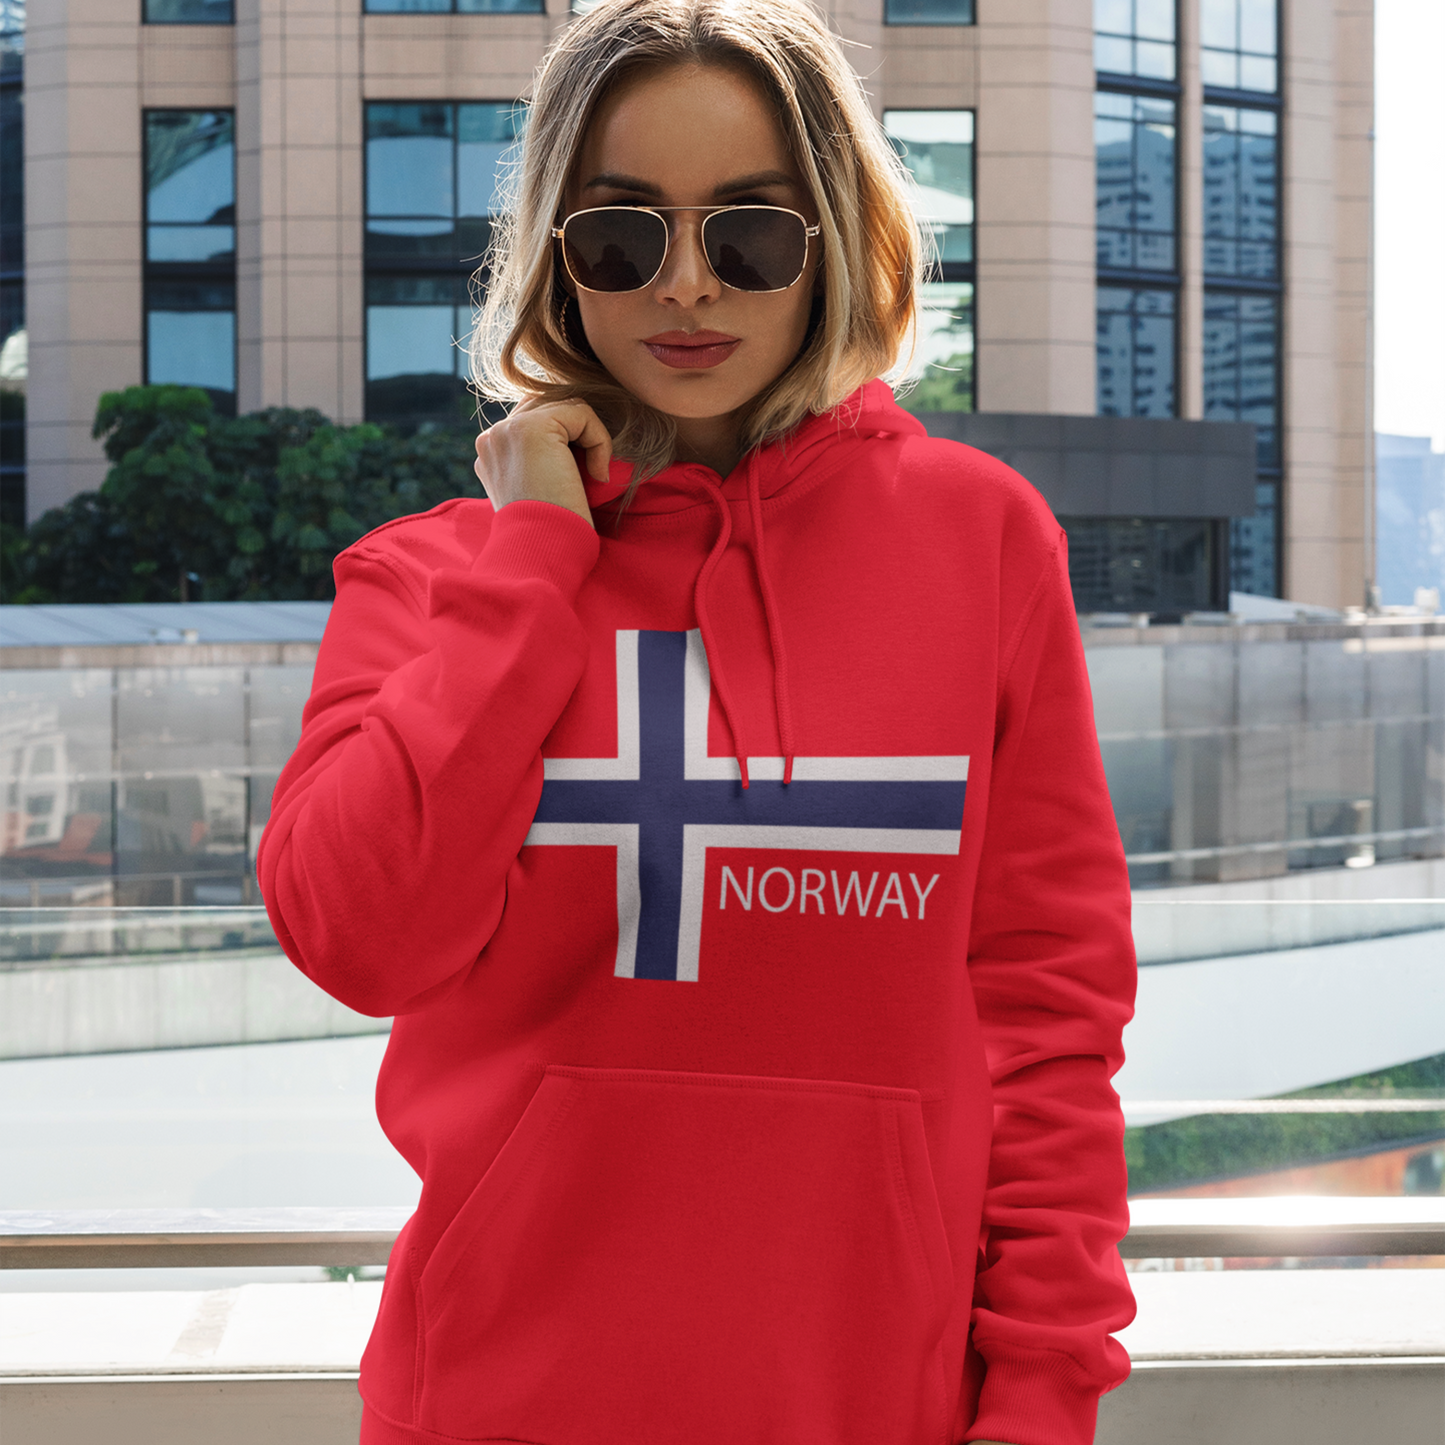 Norway Hoodie Norway Flag Norwegian Flag Norwegian Hoodie Norway Team